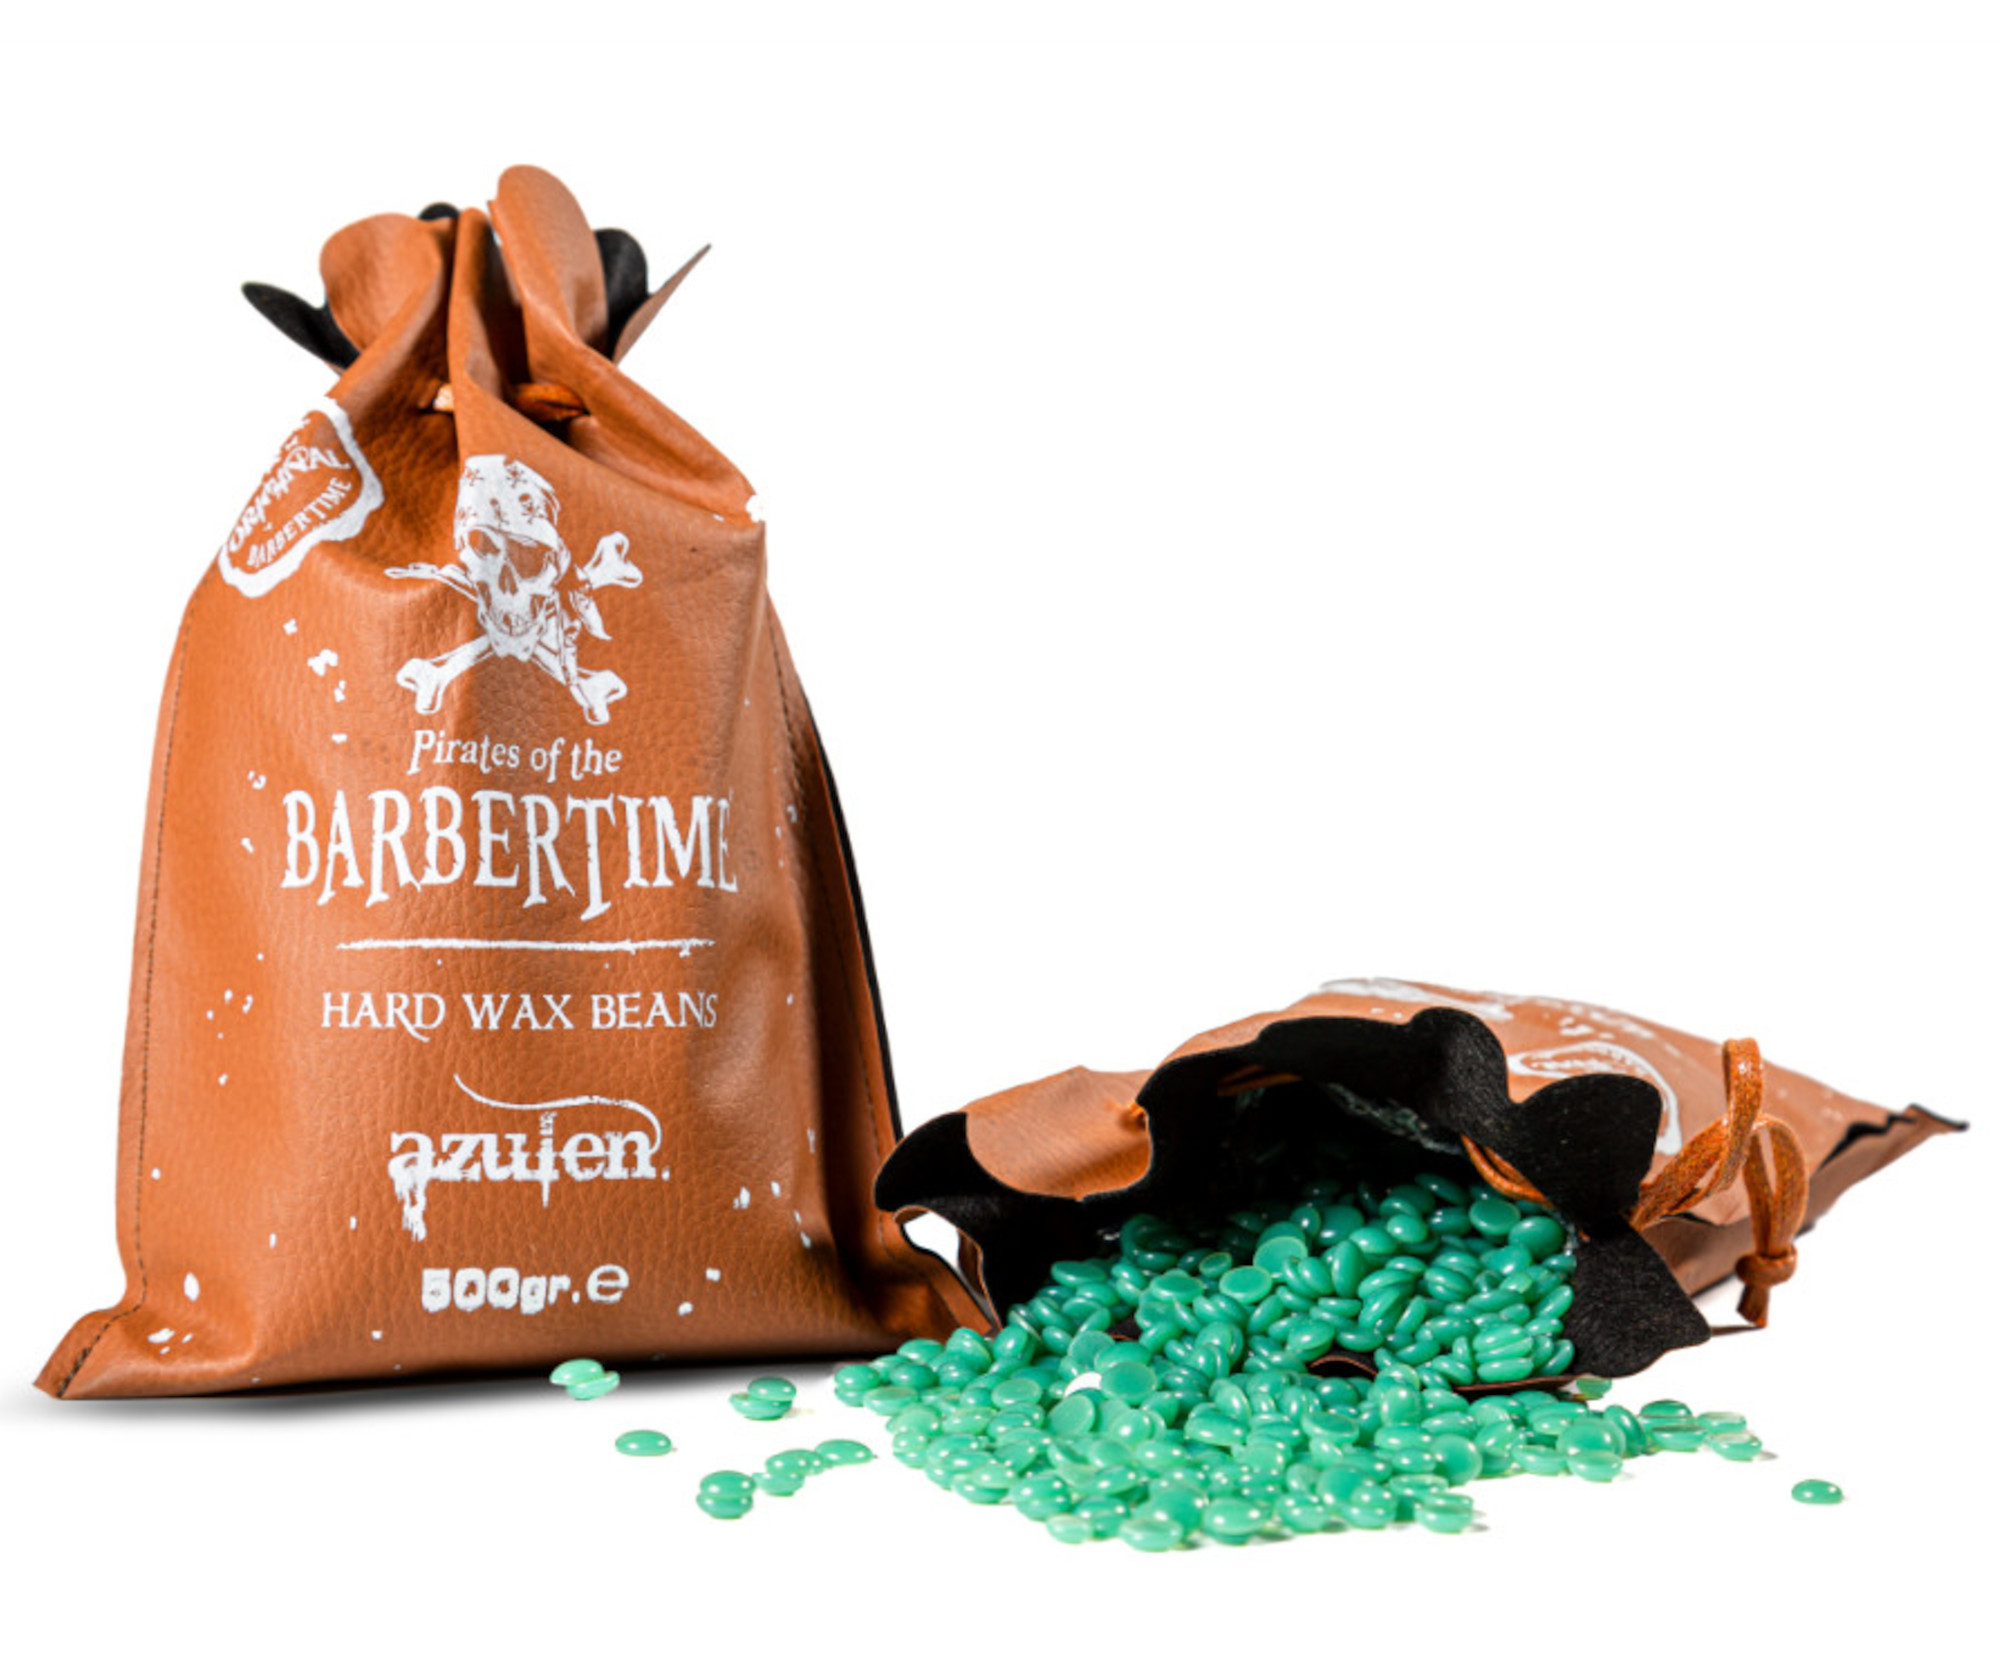 Depilační vosk pro muže Pirates of the Barbertime Hard Wax Beans Azulen - zelený, 500 g + dárek zdarma